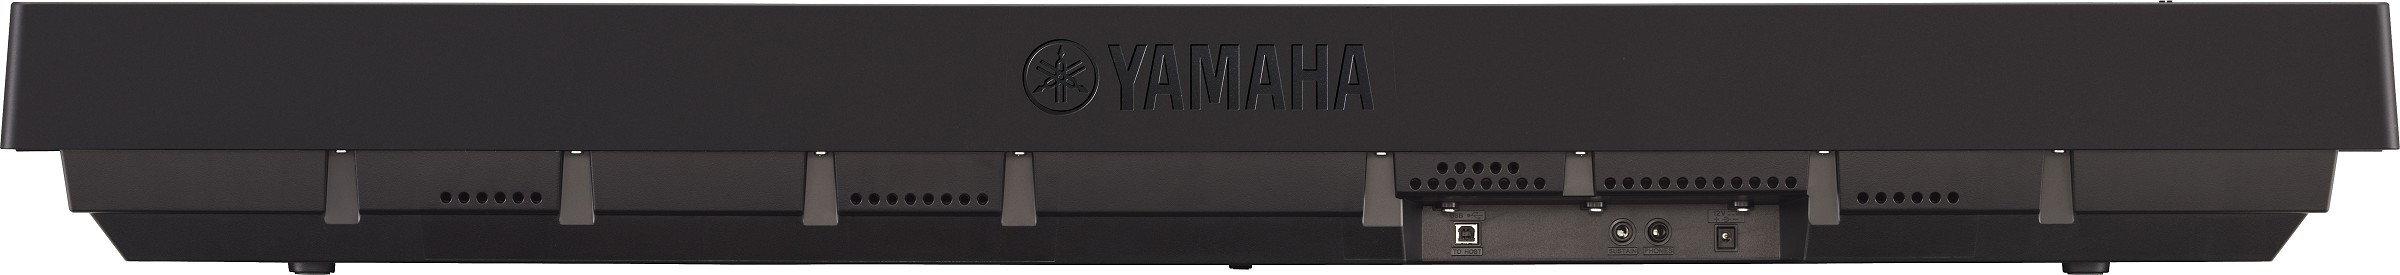 Yamaha P 45 Black